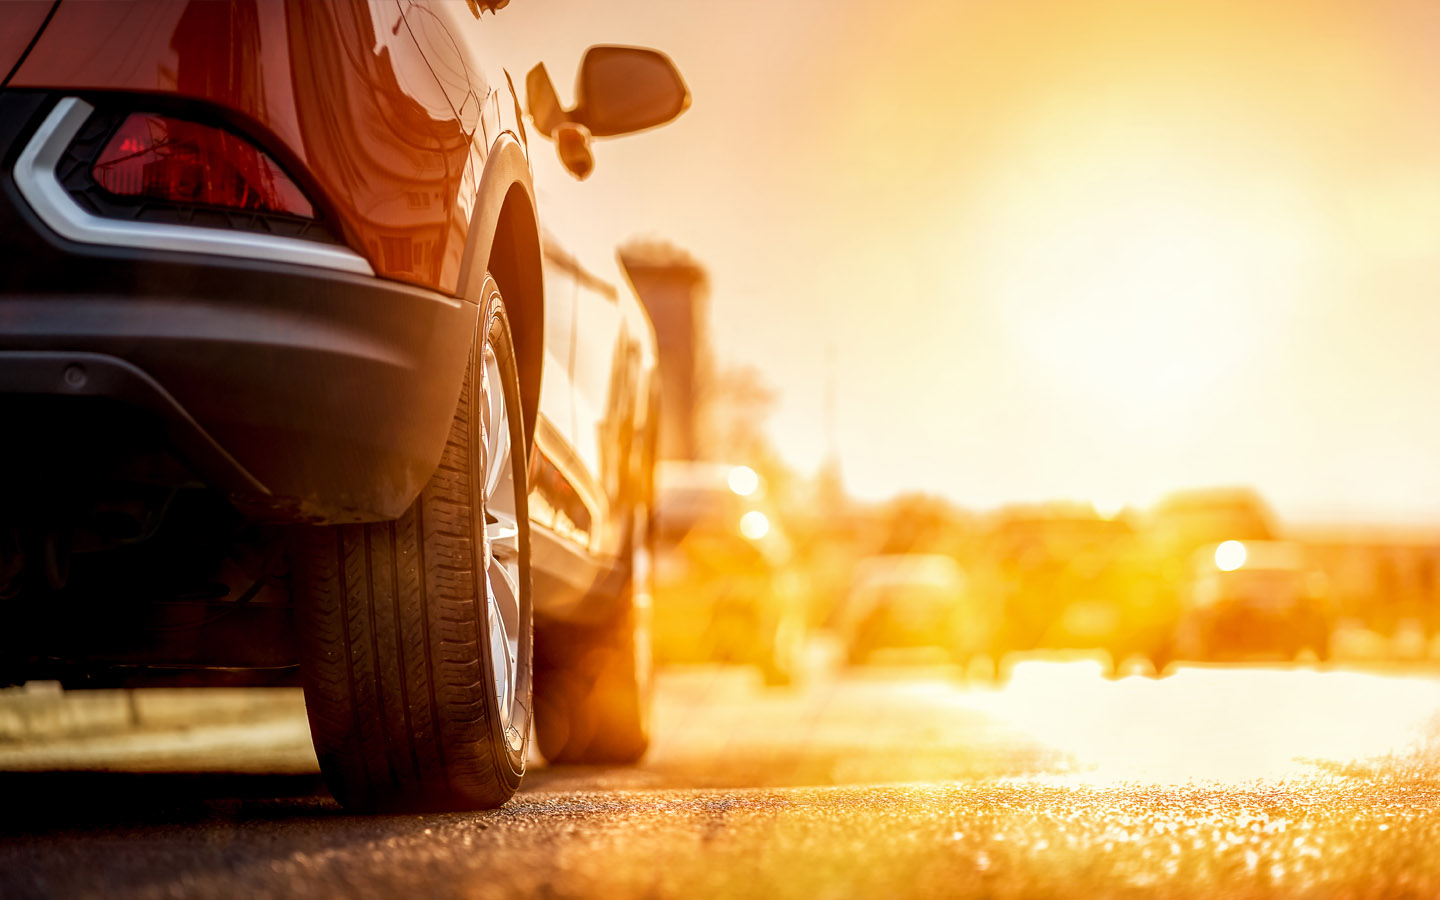 Автомобиль, подвергающийся воздействию солнечных лучей, также может повлиять на шины и автомобиль.